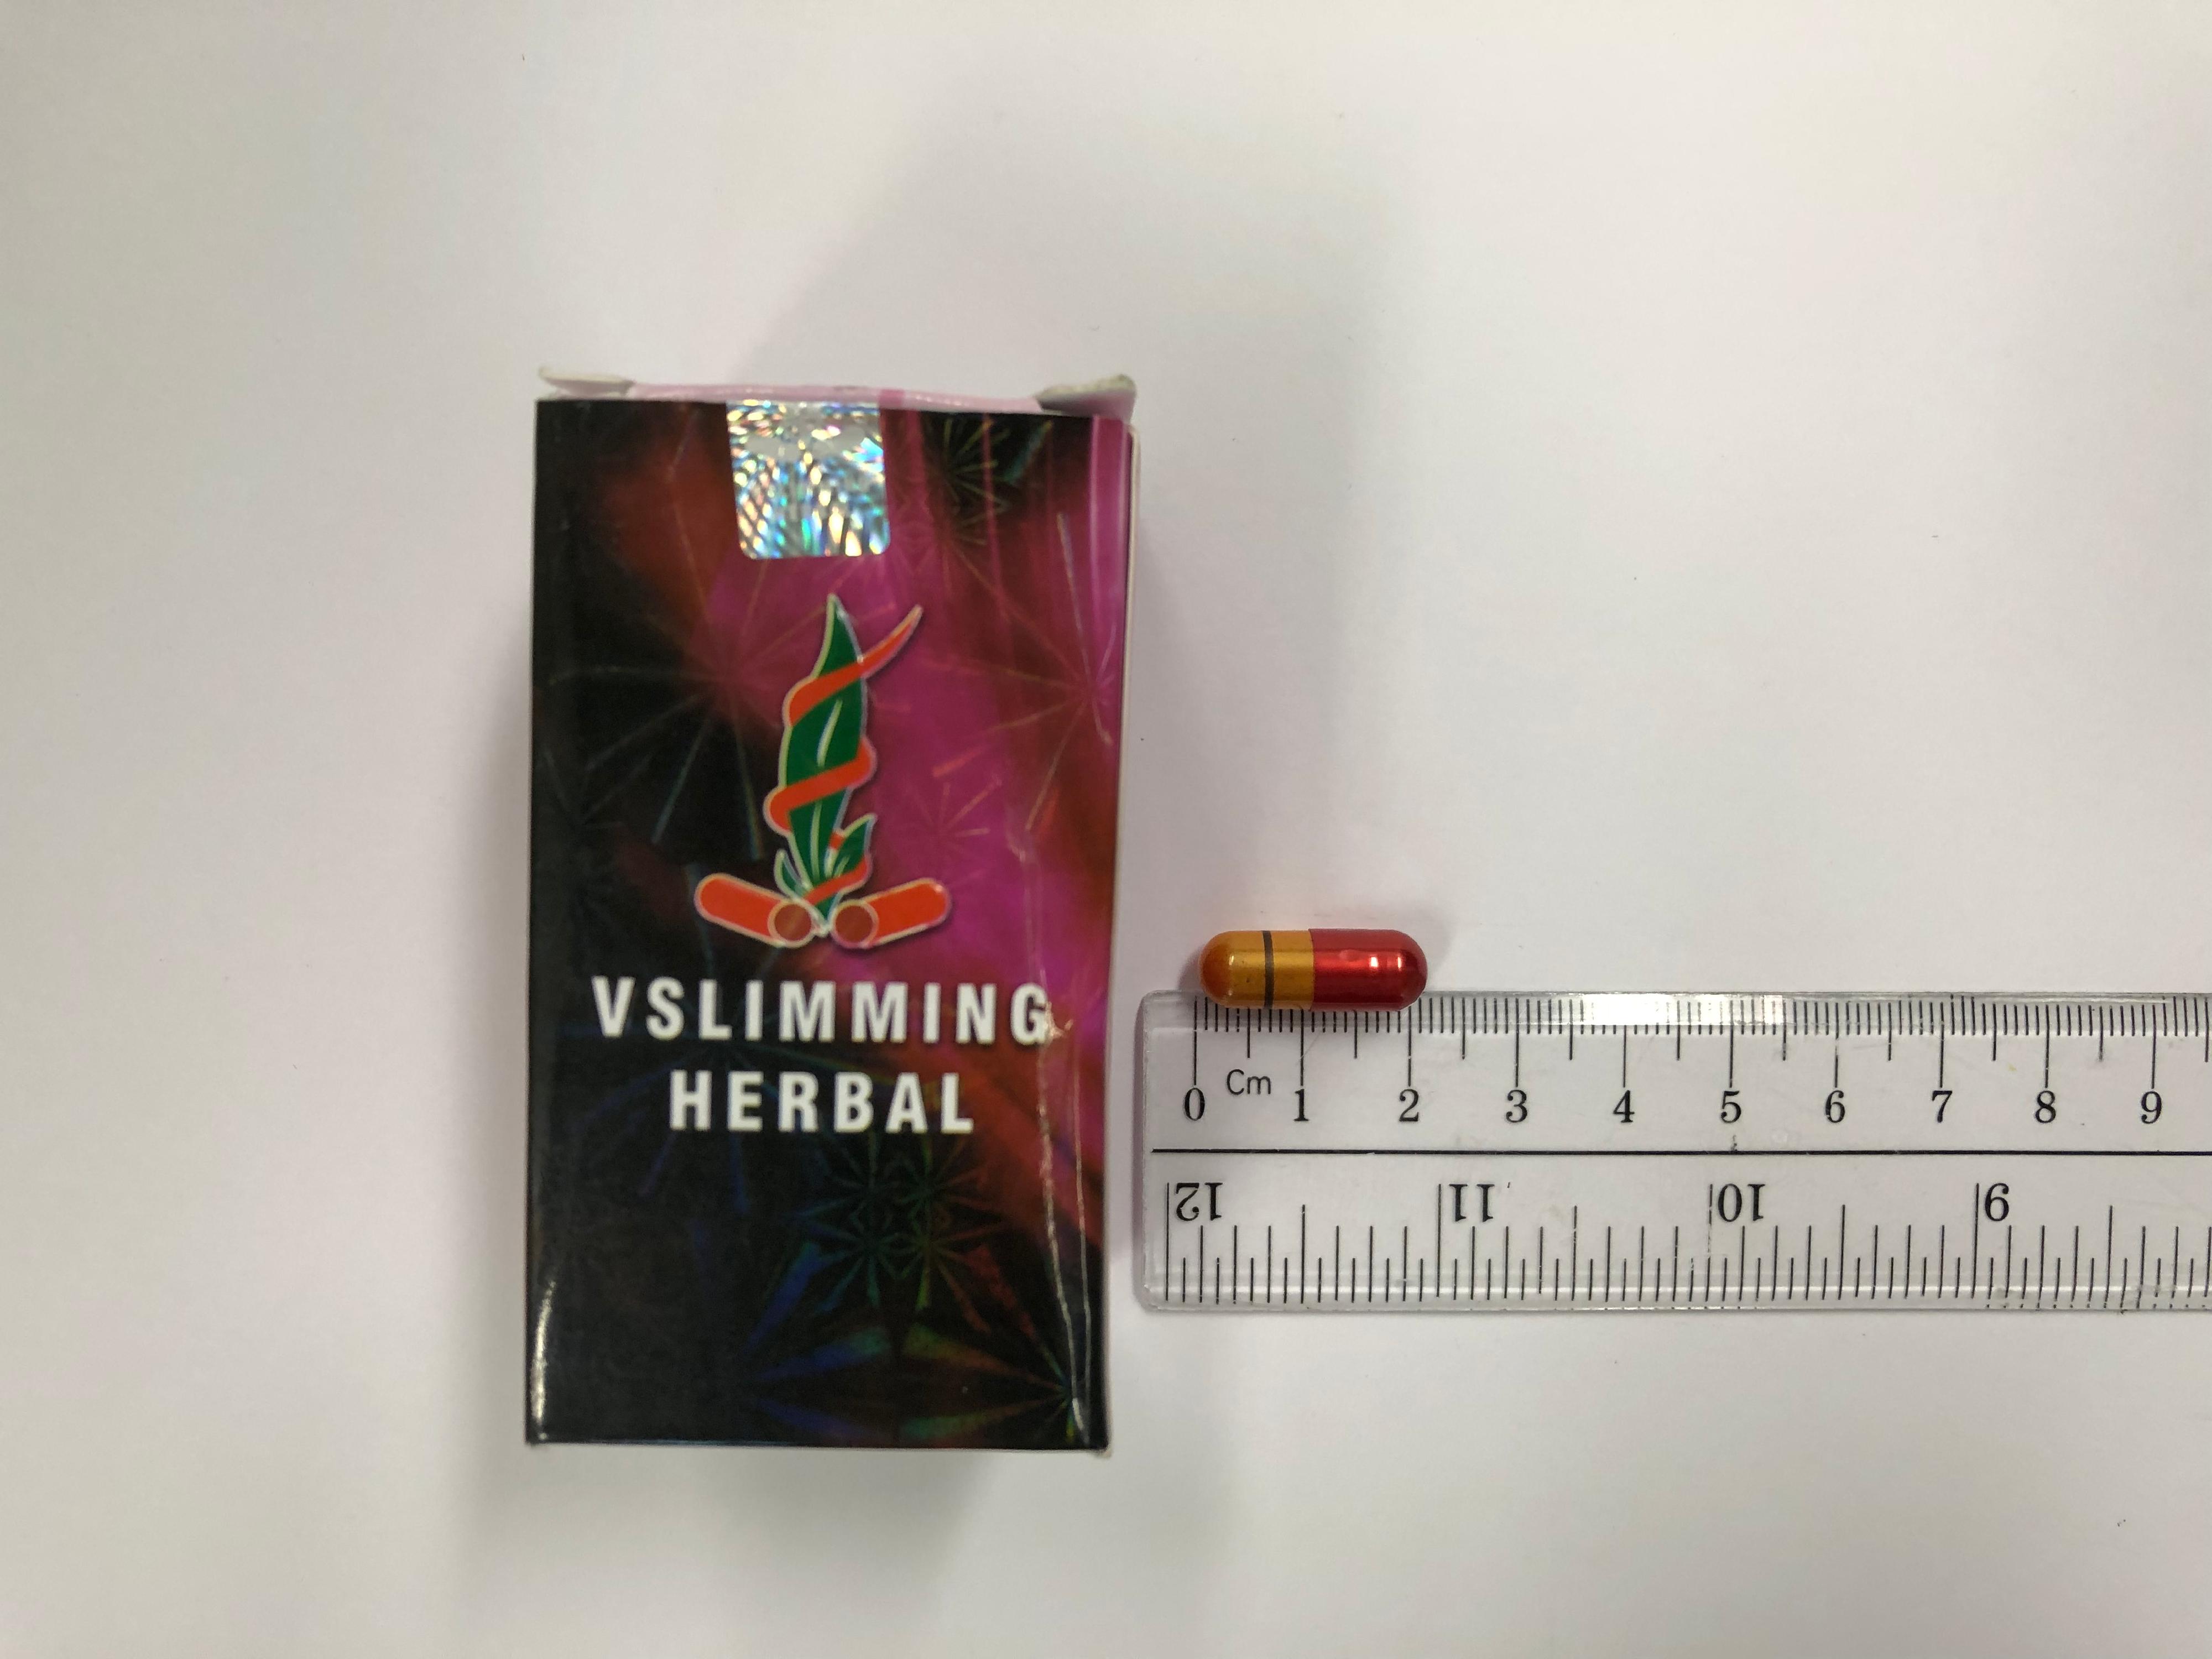 衞生署今日（九月二十二日）就銷售一款名為「VSlimming Herbal」的減肥產品採取行動，該產品被發現含有未標示受管制藥物成分，包括已禁用的西藥成分。行動中，一名36歲男子涉嫌非法售賣及管有第1部毒藥及未經註冊藥劑製品被警方拘捕。圖示該款瘦身產品。